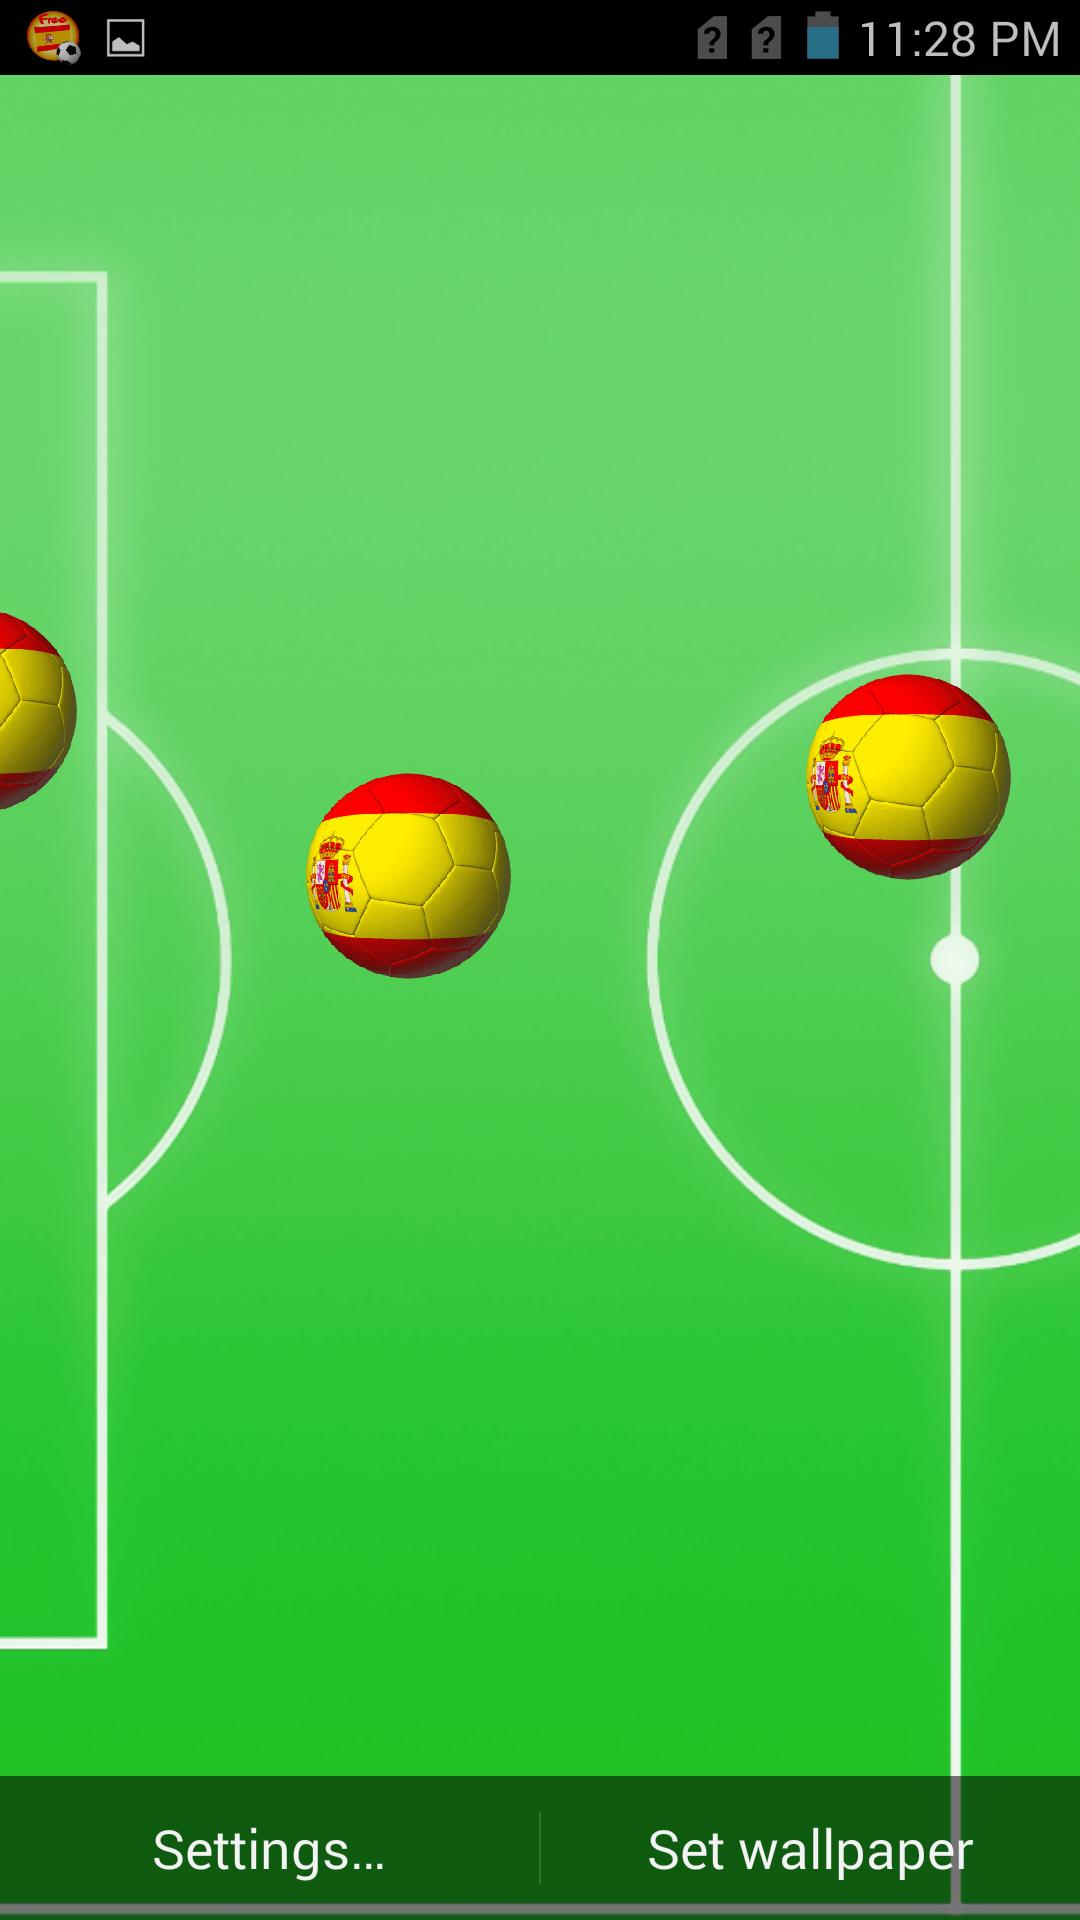 Android 用の スペインサッカー壁紙 Apk をダウンロード